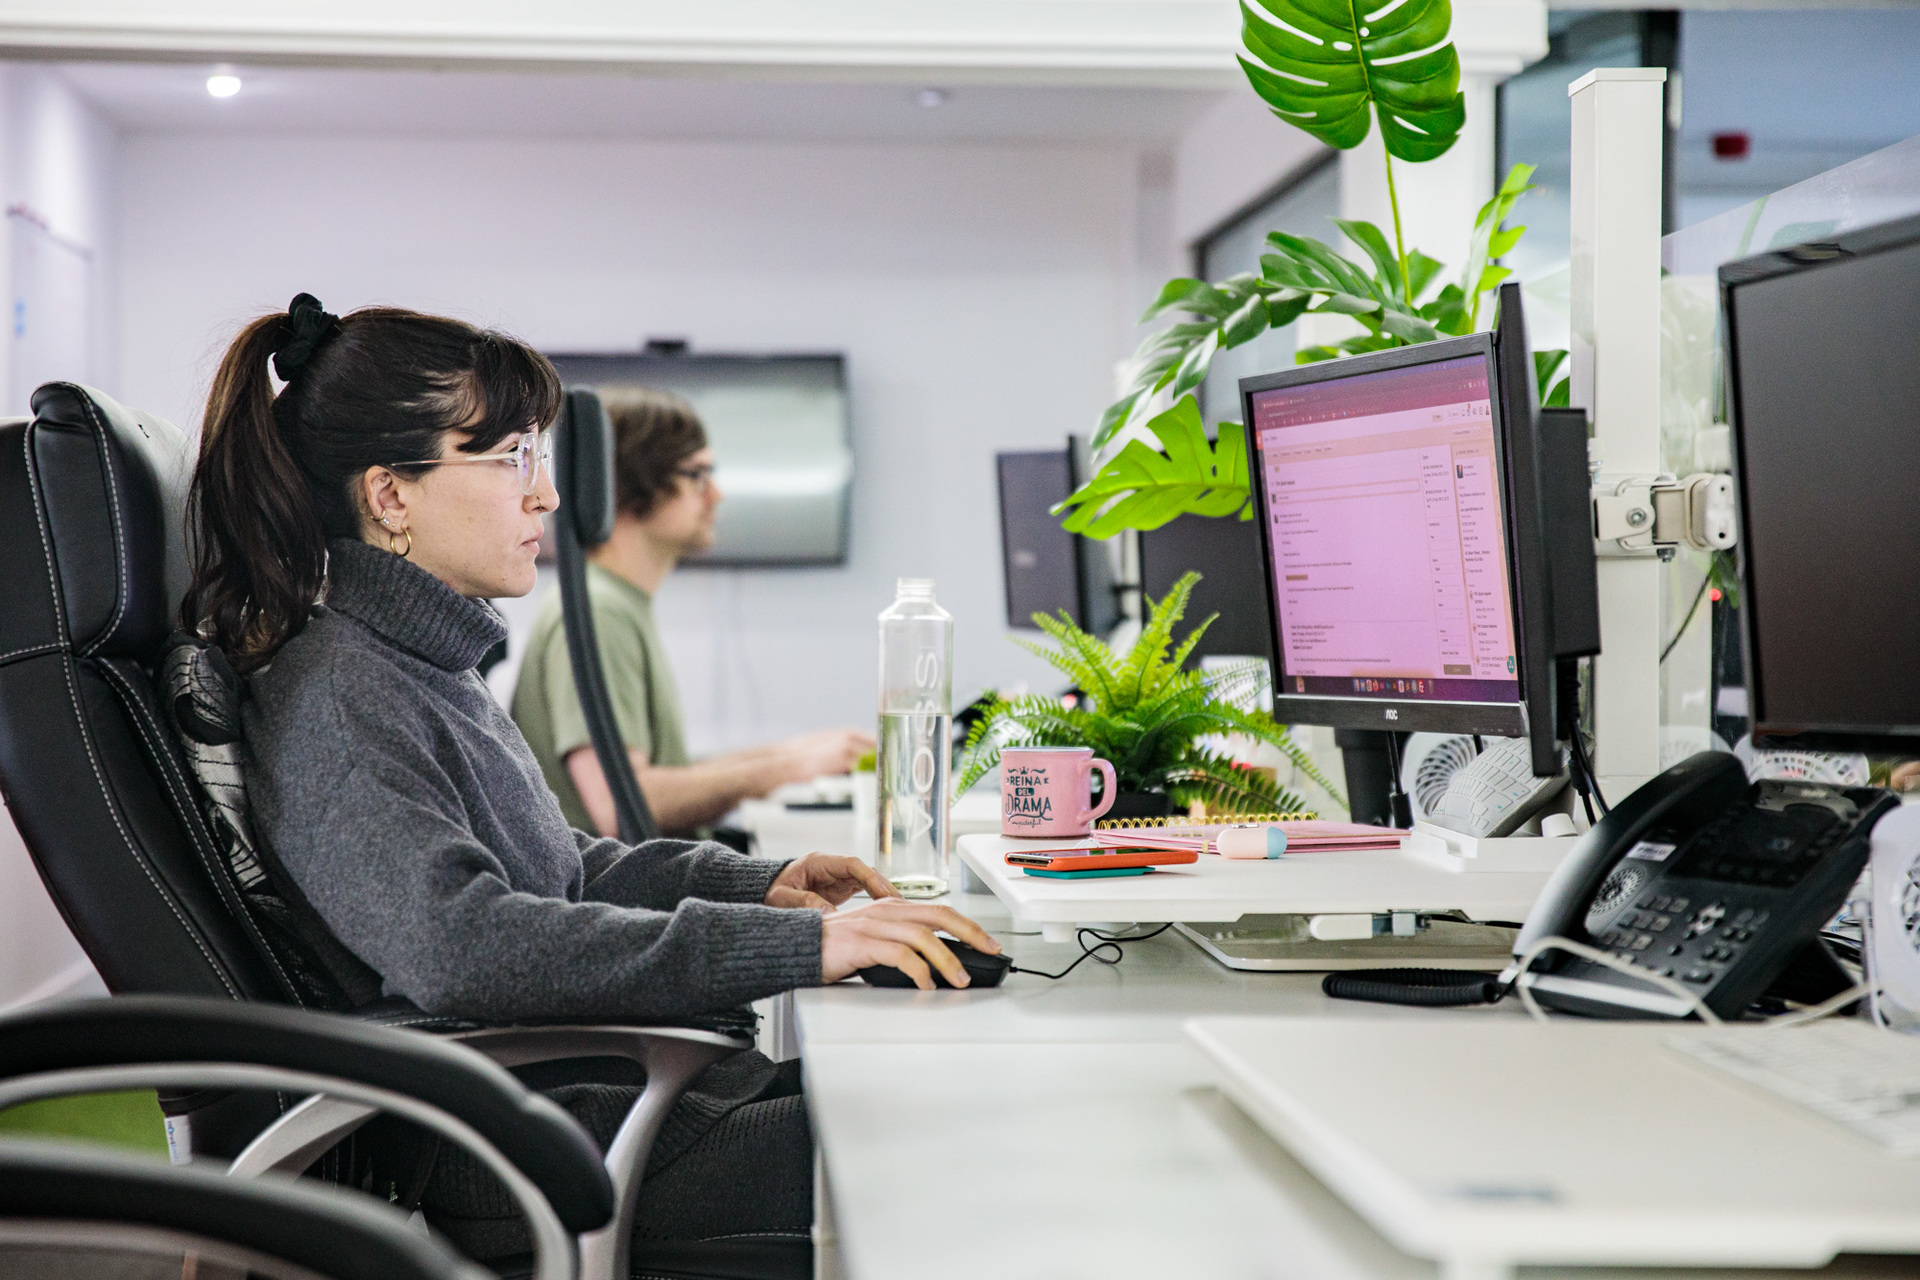 A female staff member sat at her desk working on her desktop computer